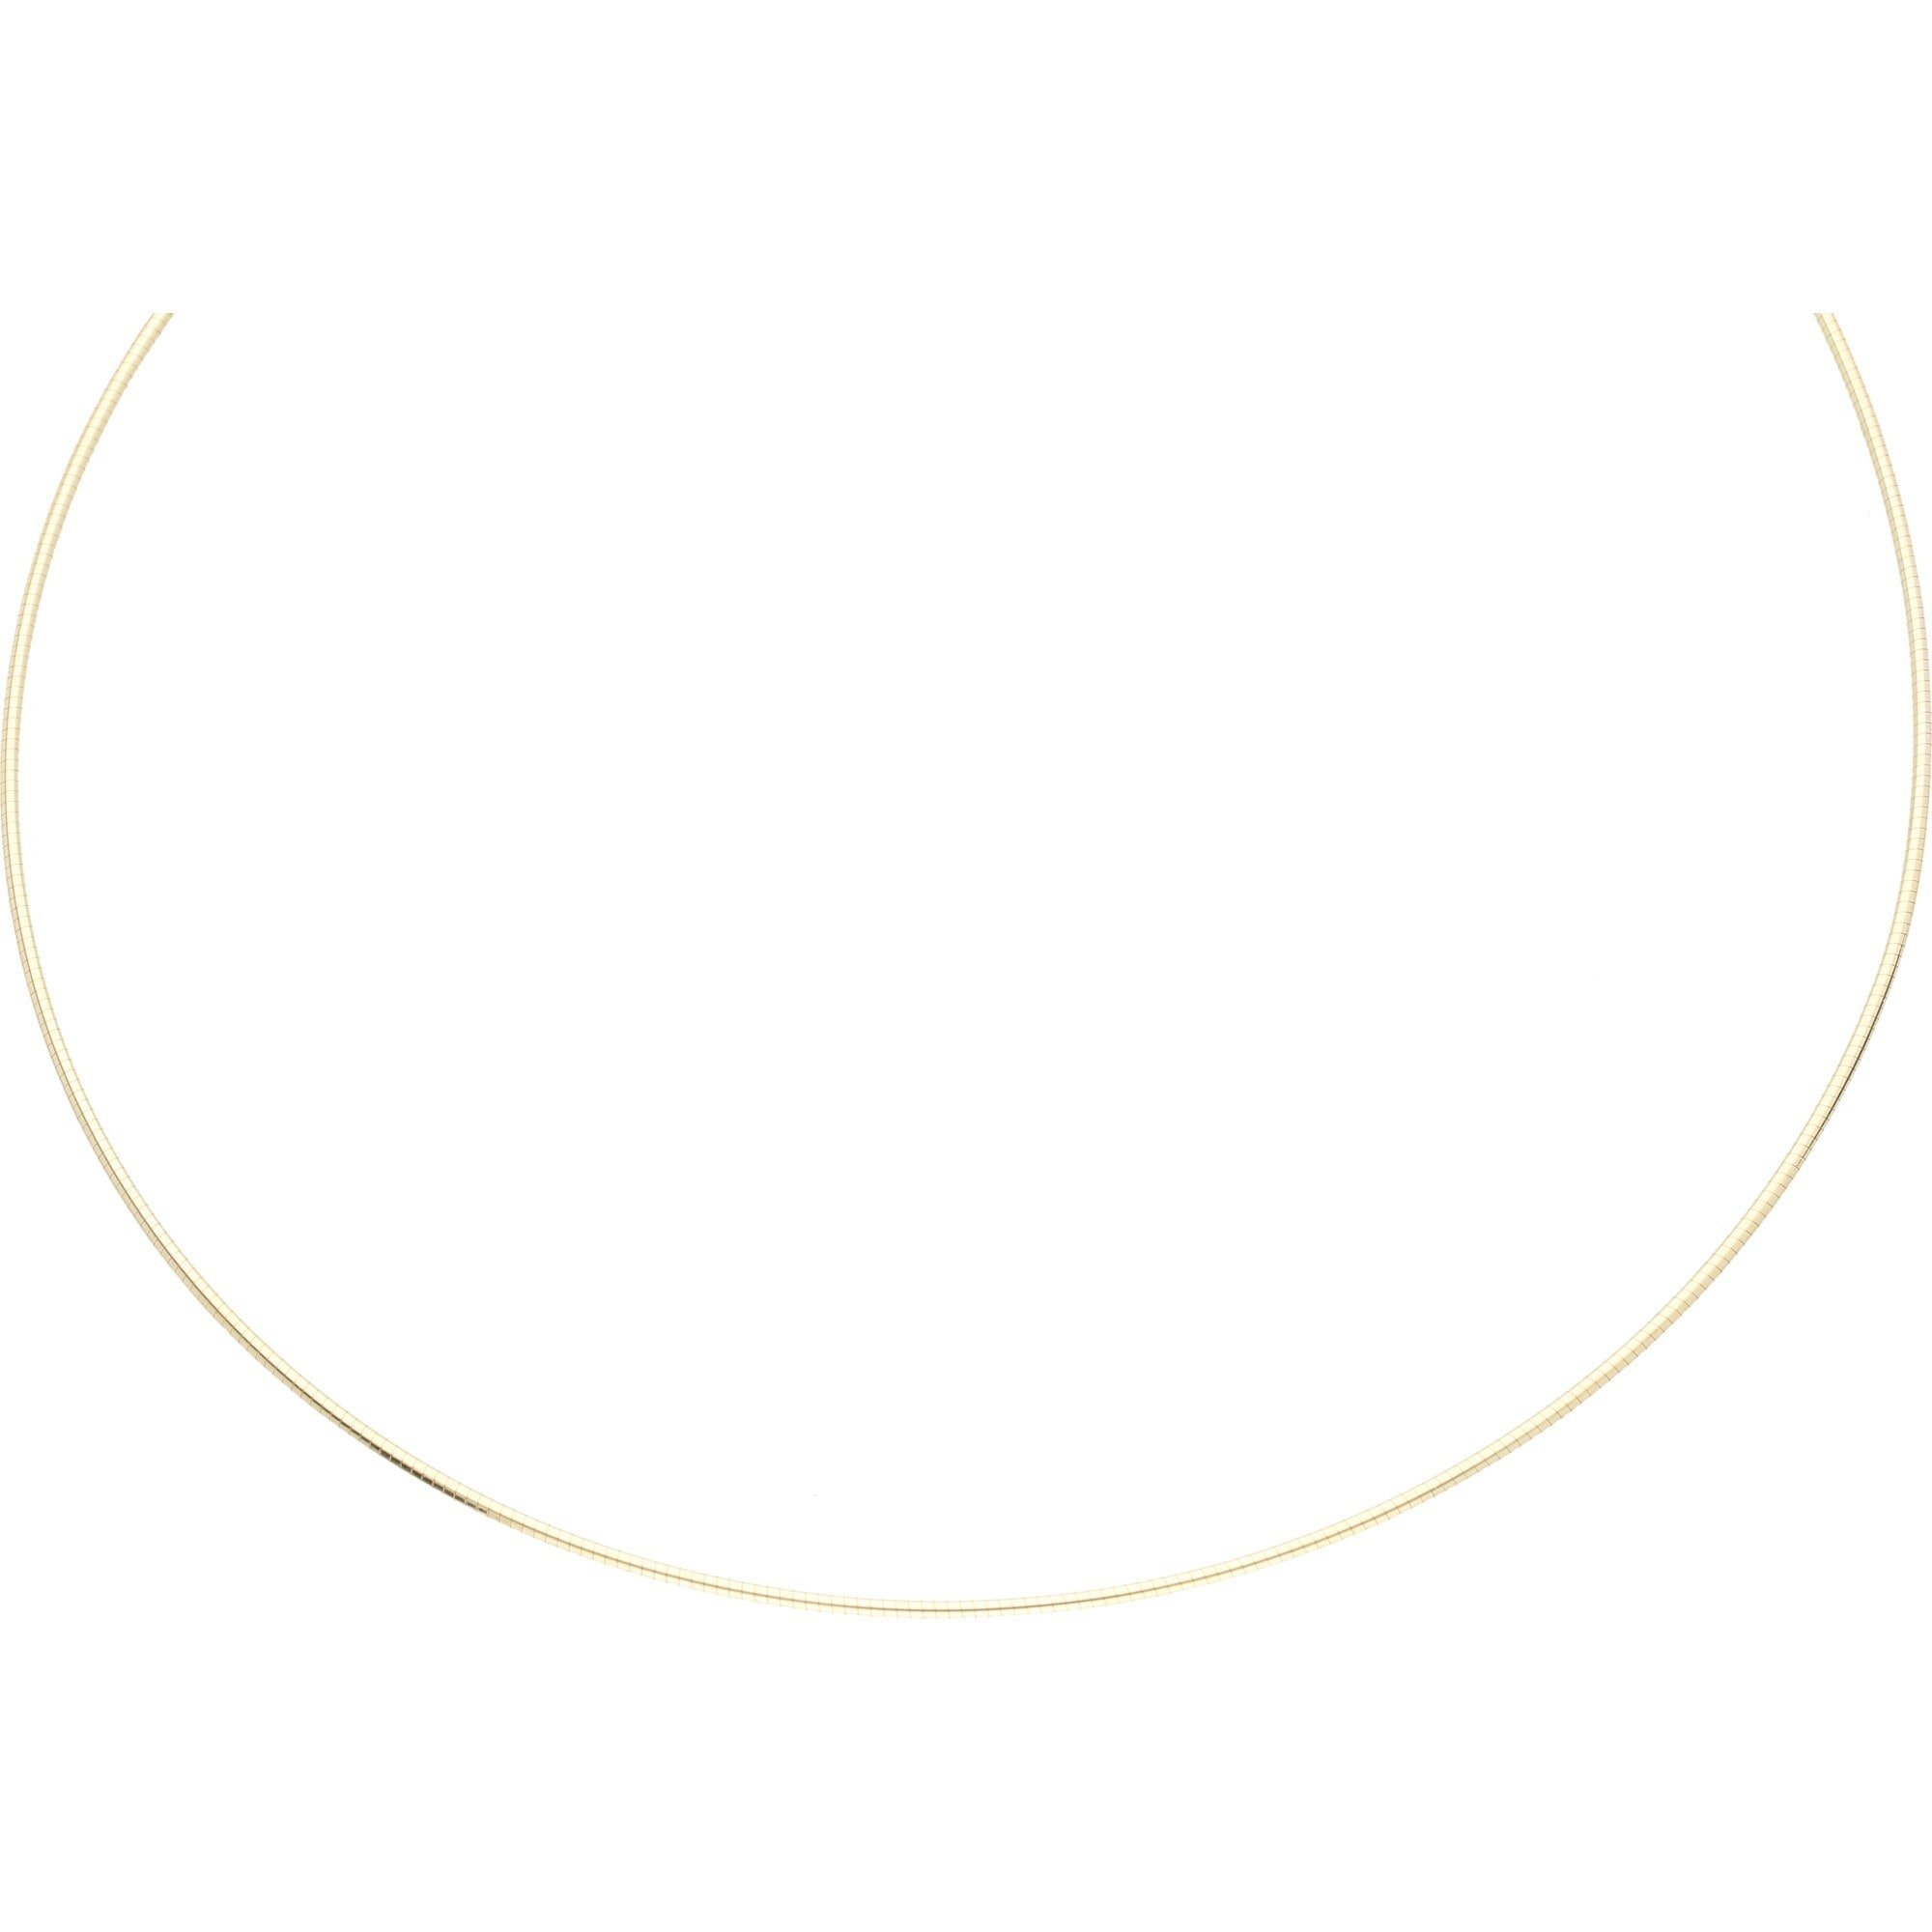 Gold »Kette Merano kaufen | 585« Omegakette, Luigi UNIVERSAL massiv, Goldkette